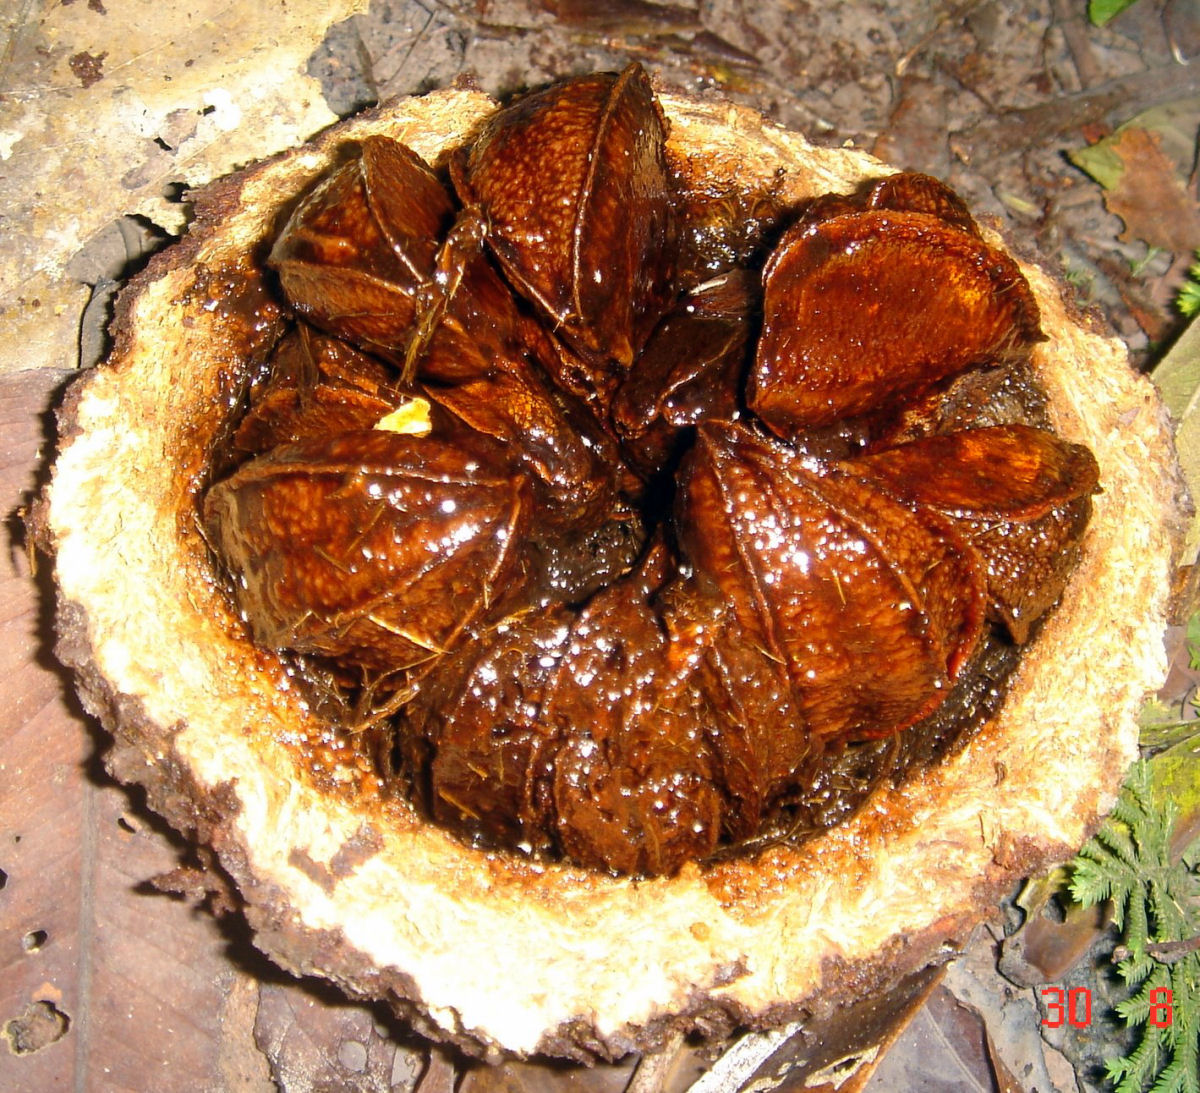 Como toneladas de castanha-do-pará são coletadas nas profundezas da floresta amazônica